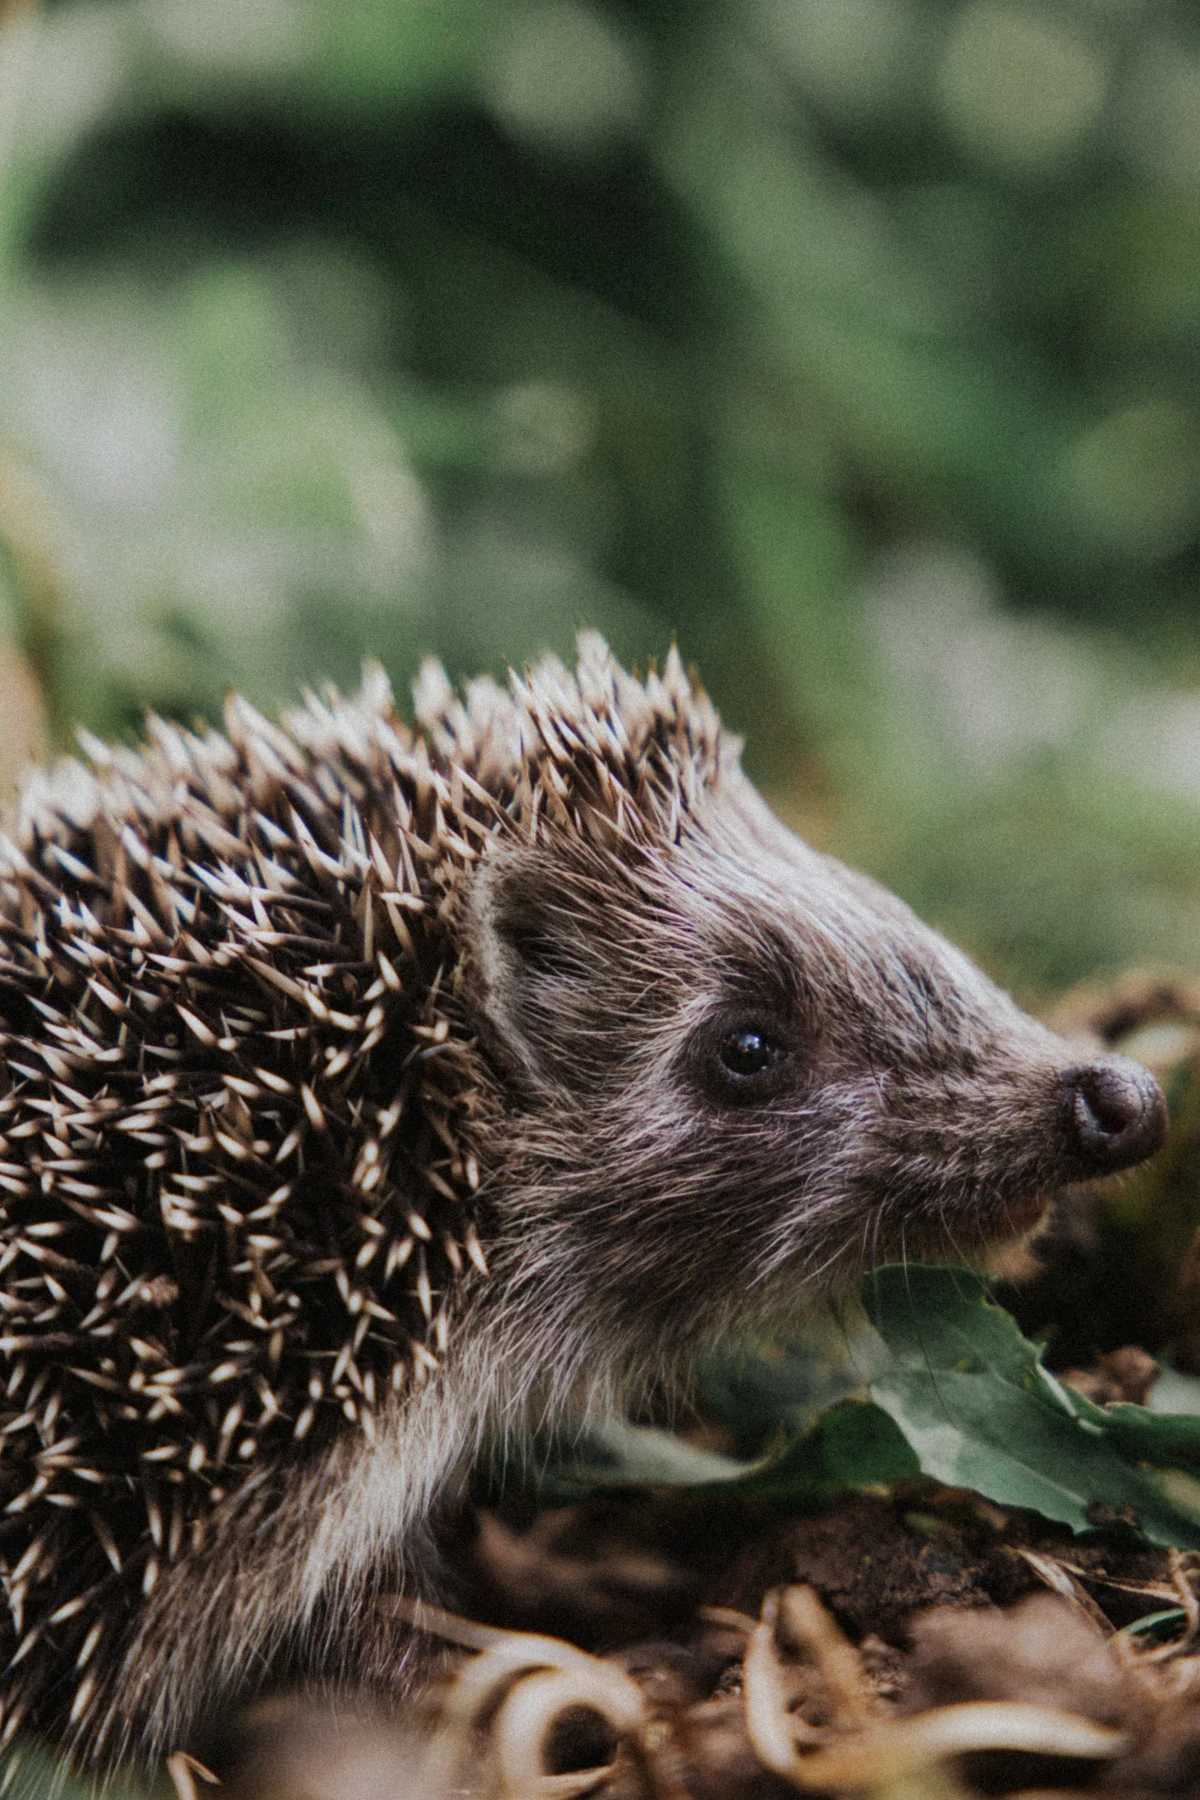 close up of a hedgehog